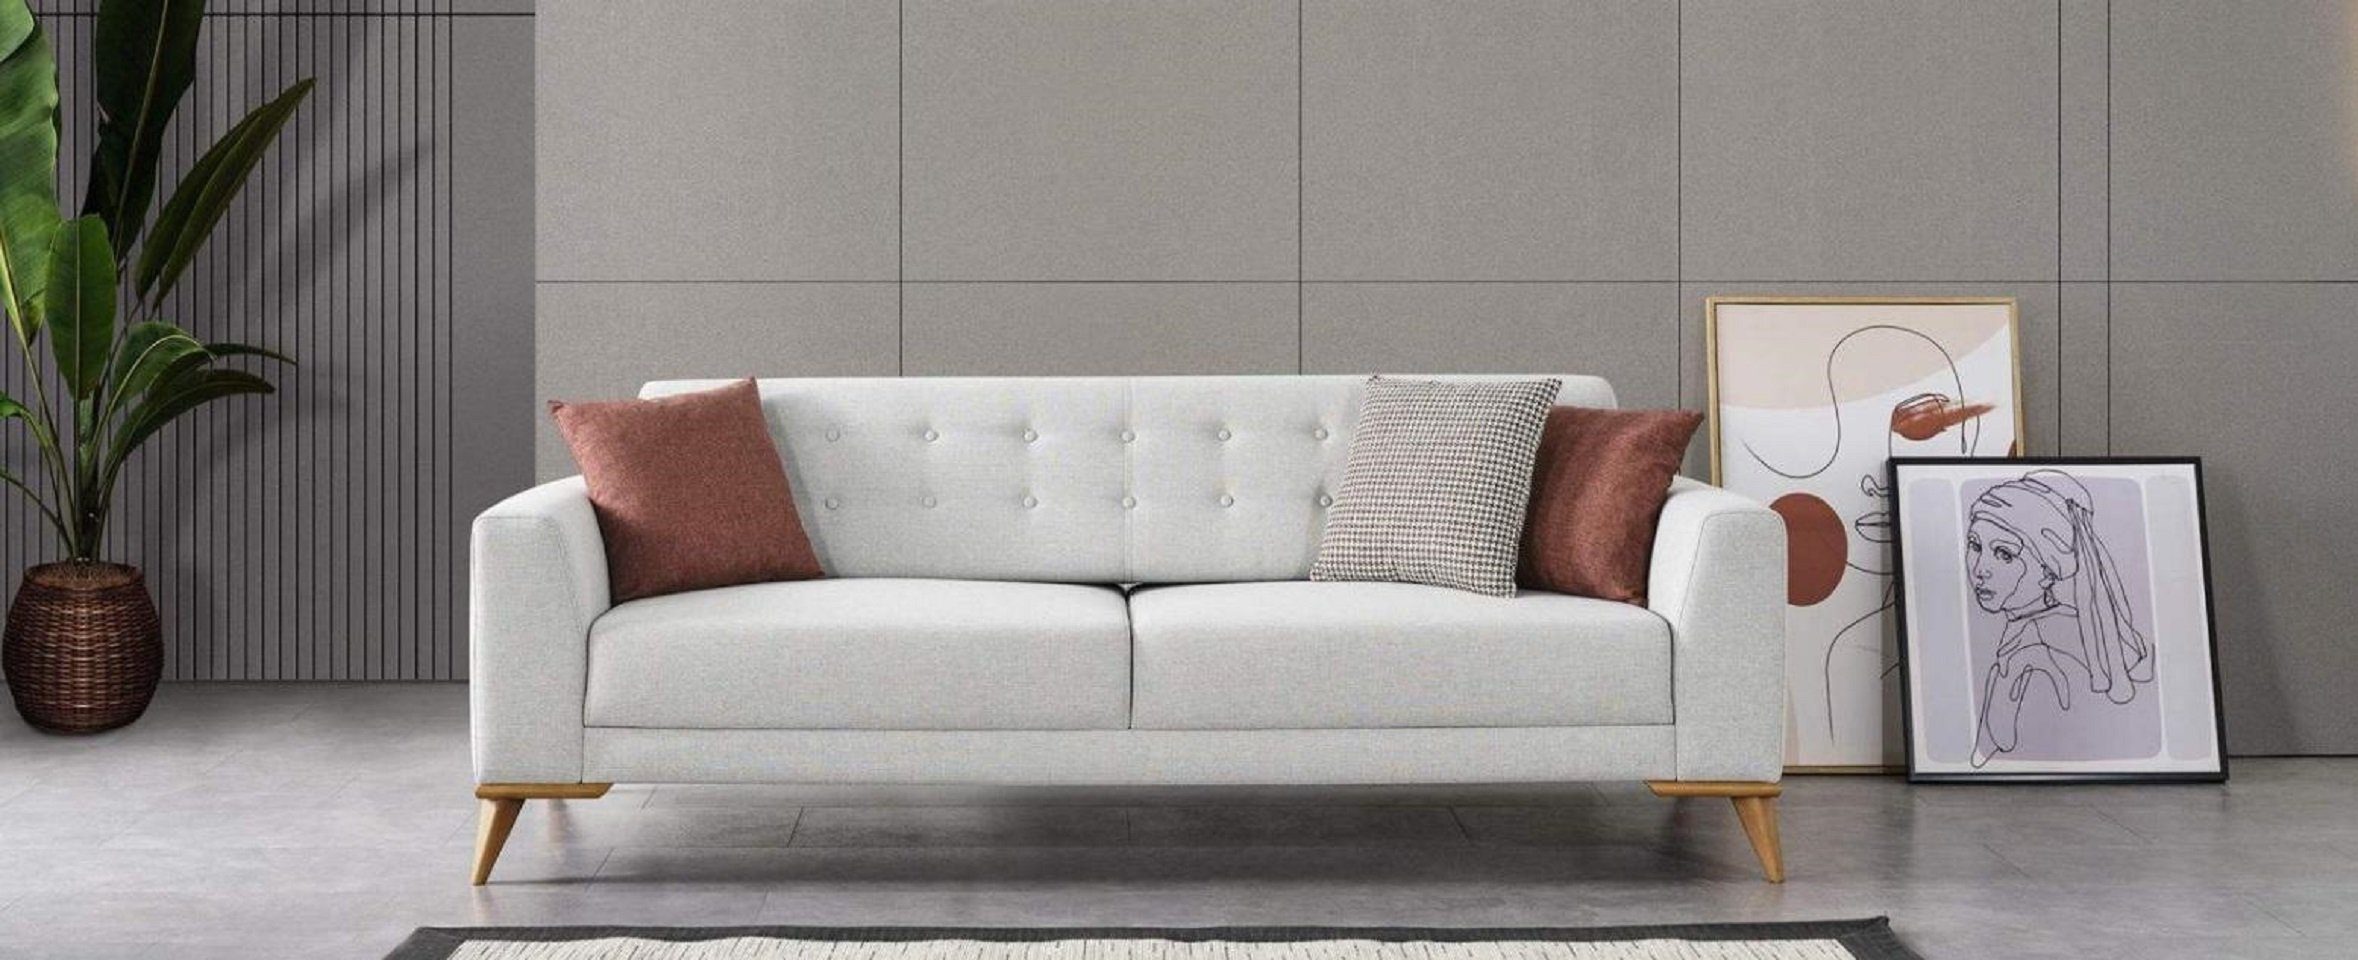 Europe 3-Sitzer 1 JVmoebel Wohnzimmer Sofa Stilvoll Made Design in Teile, Dreisitzer Luxus Sitzer Möbel 3 Couch,